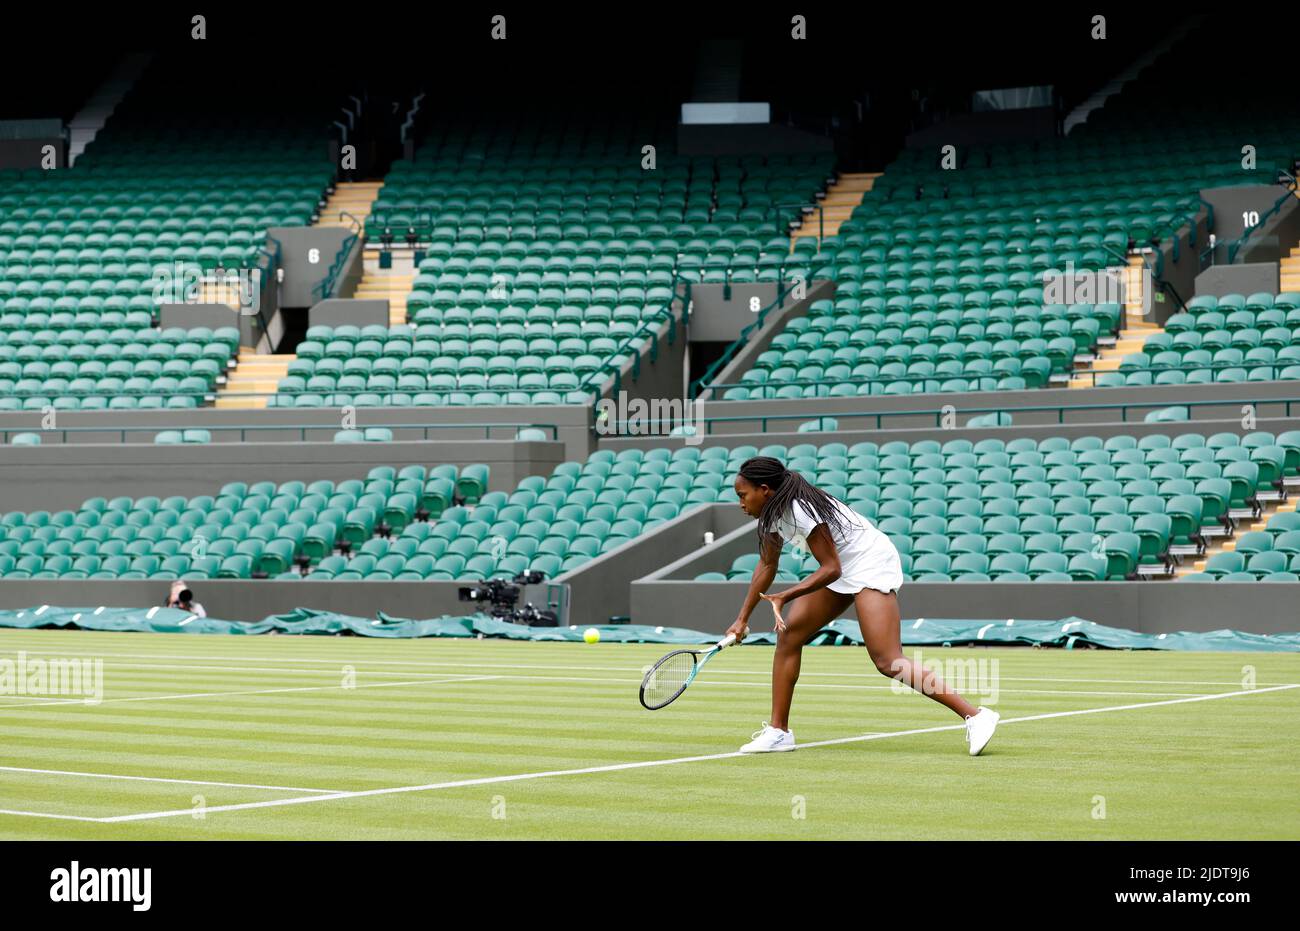 Coco Gauff übt auf Platz 1 vor der Wimbledon-Meisterschaft 2022 beim All England Lawn Tennis and Croquet Club in Wimbledon. Bilddatum: Donnerstag, 23. Juni 2022. Stockfoto